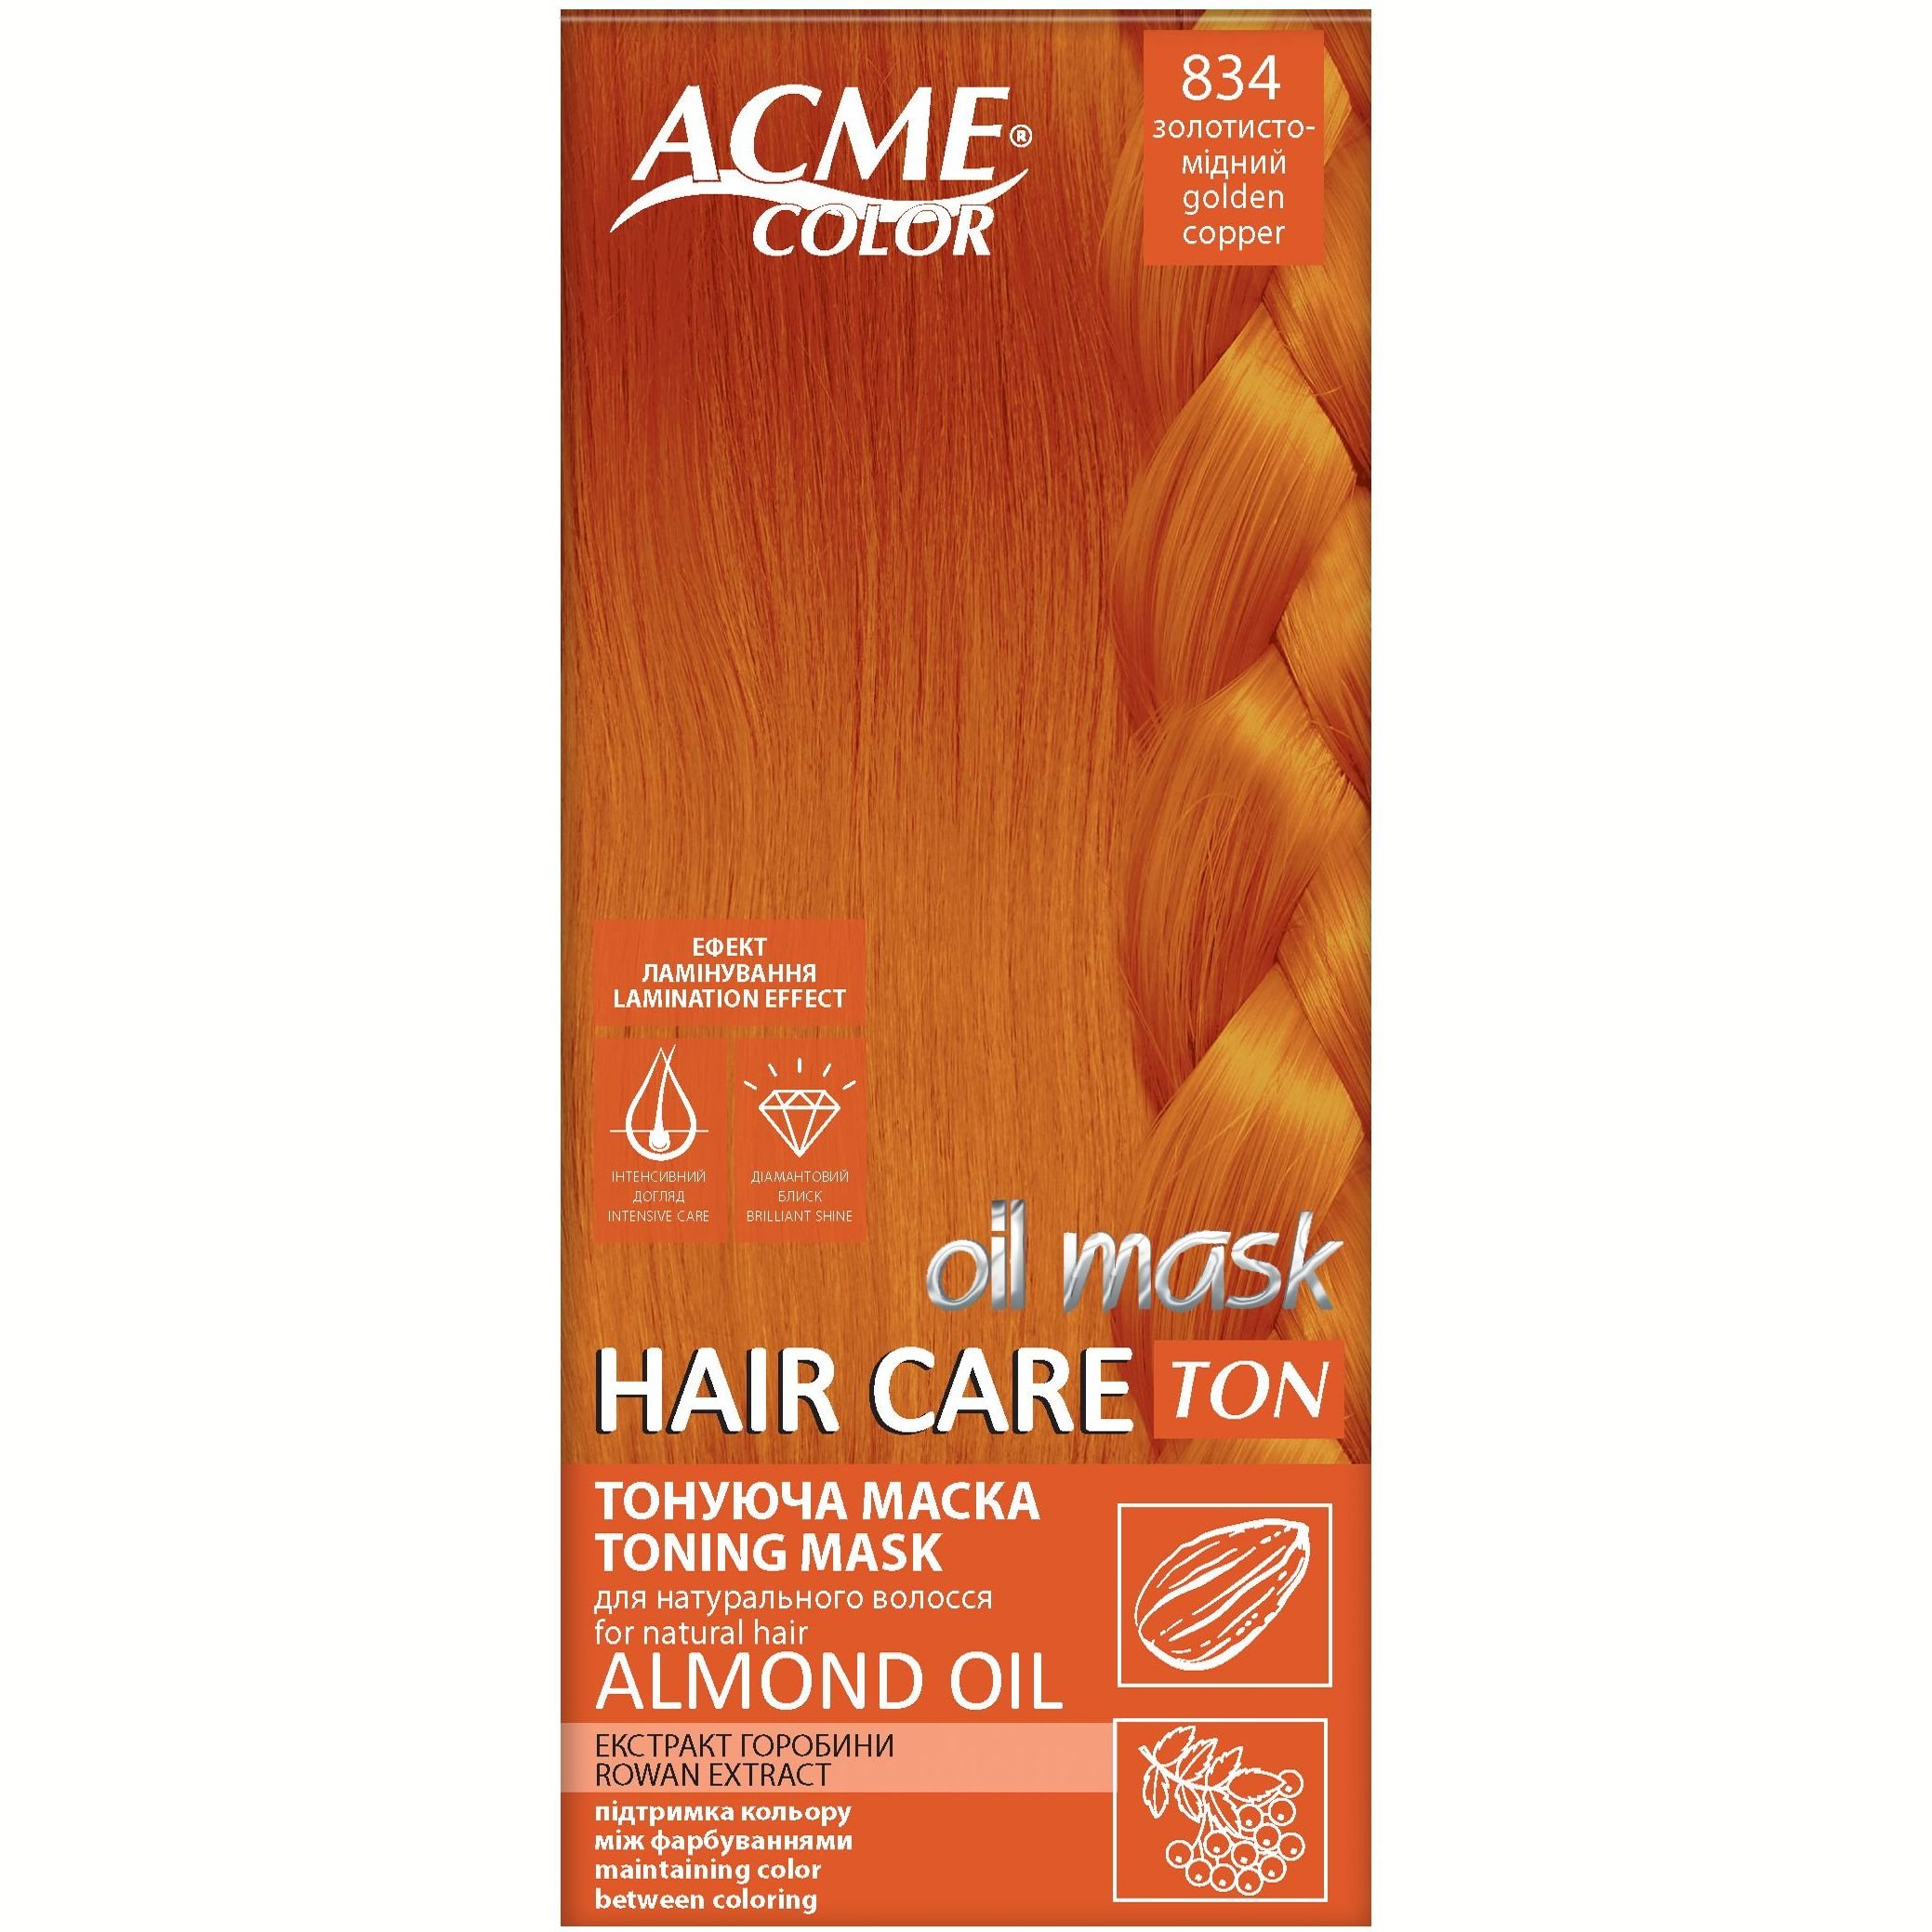 Тонуюча маска для волосся Acme Color Hair Care Ton oil mask, відтінок 834, золотисто-мідний, 30 мл - фото 1